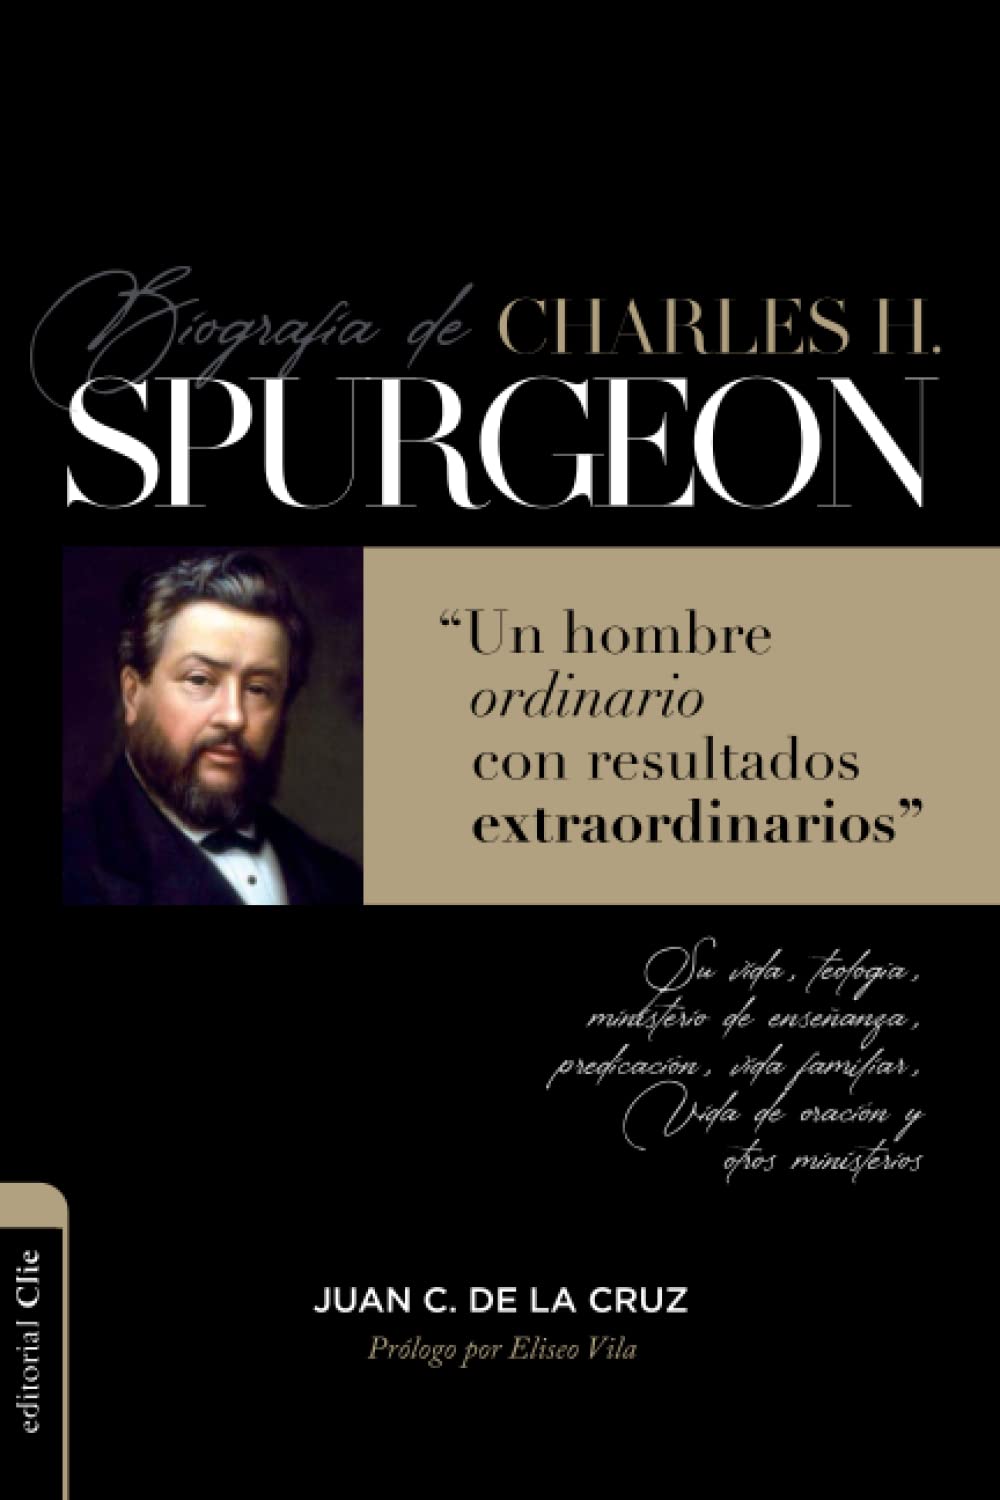 Biografia de Charles Spurgeon - Librería Libros Cristianos - Libro